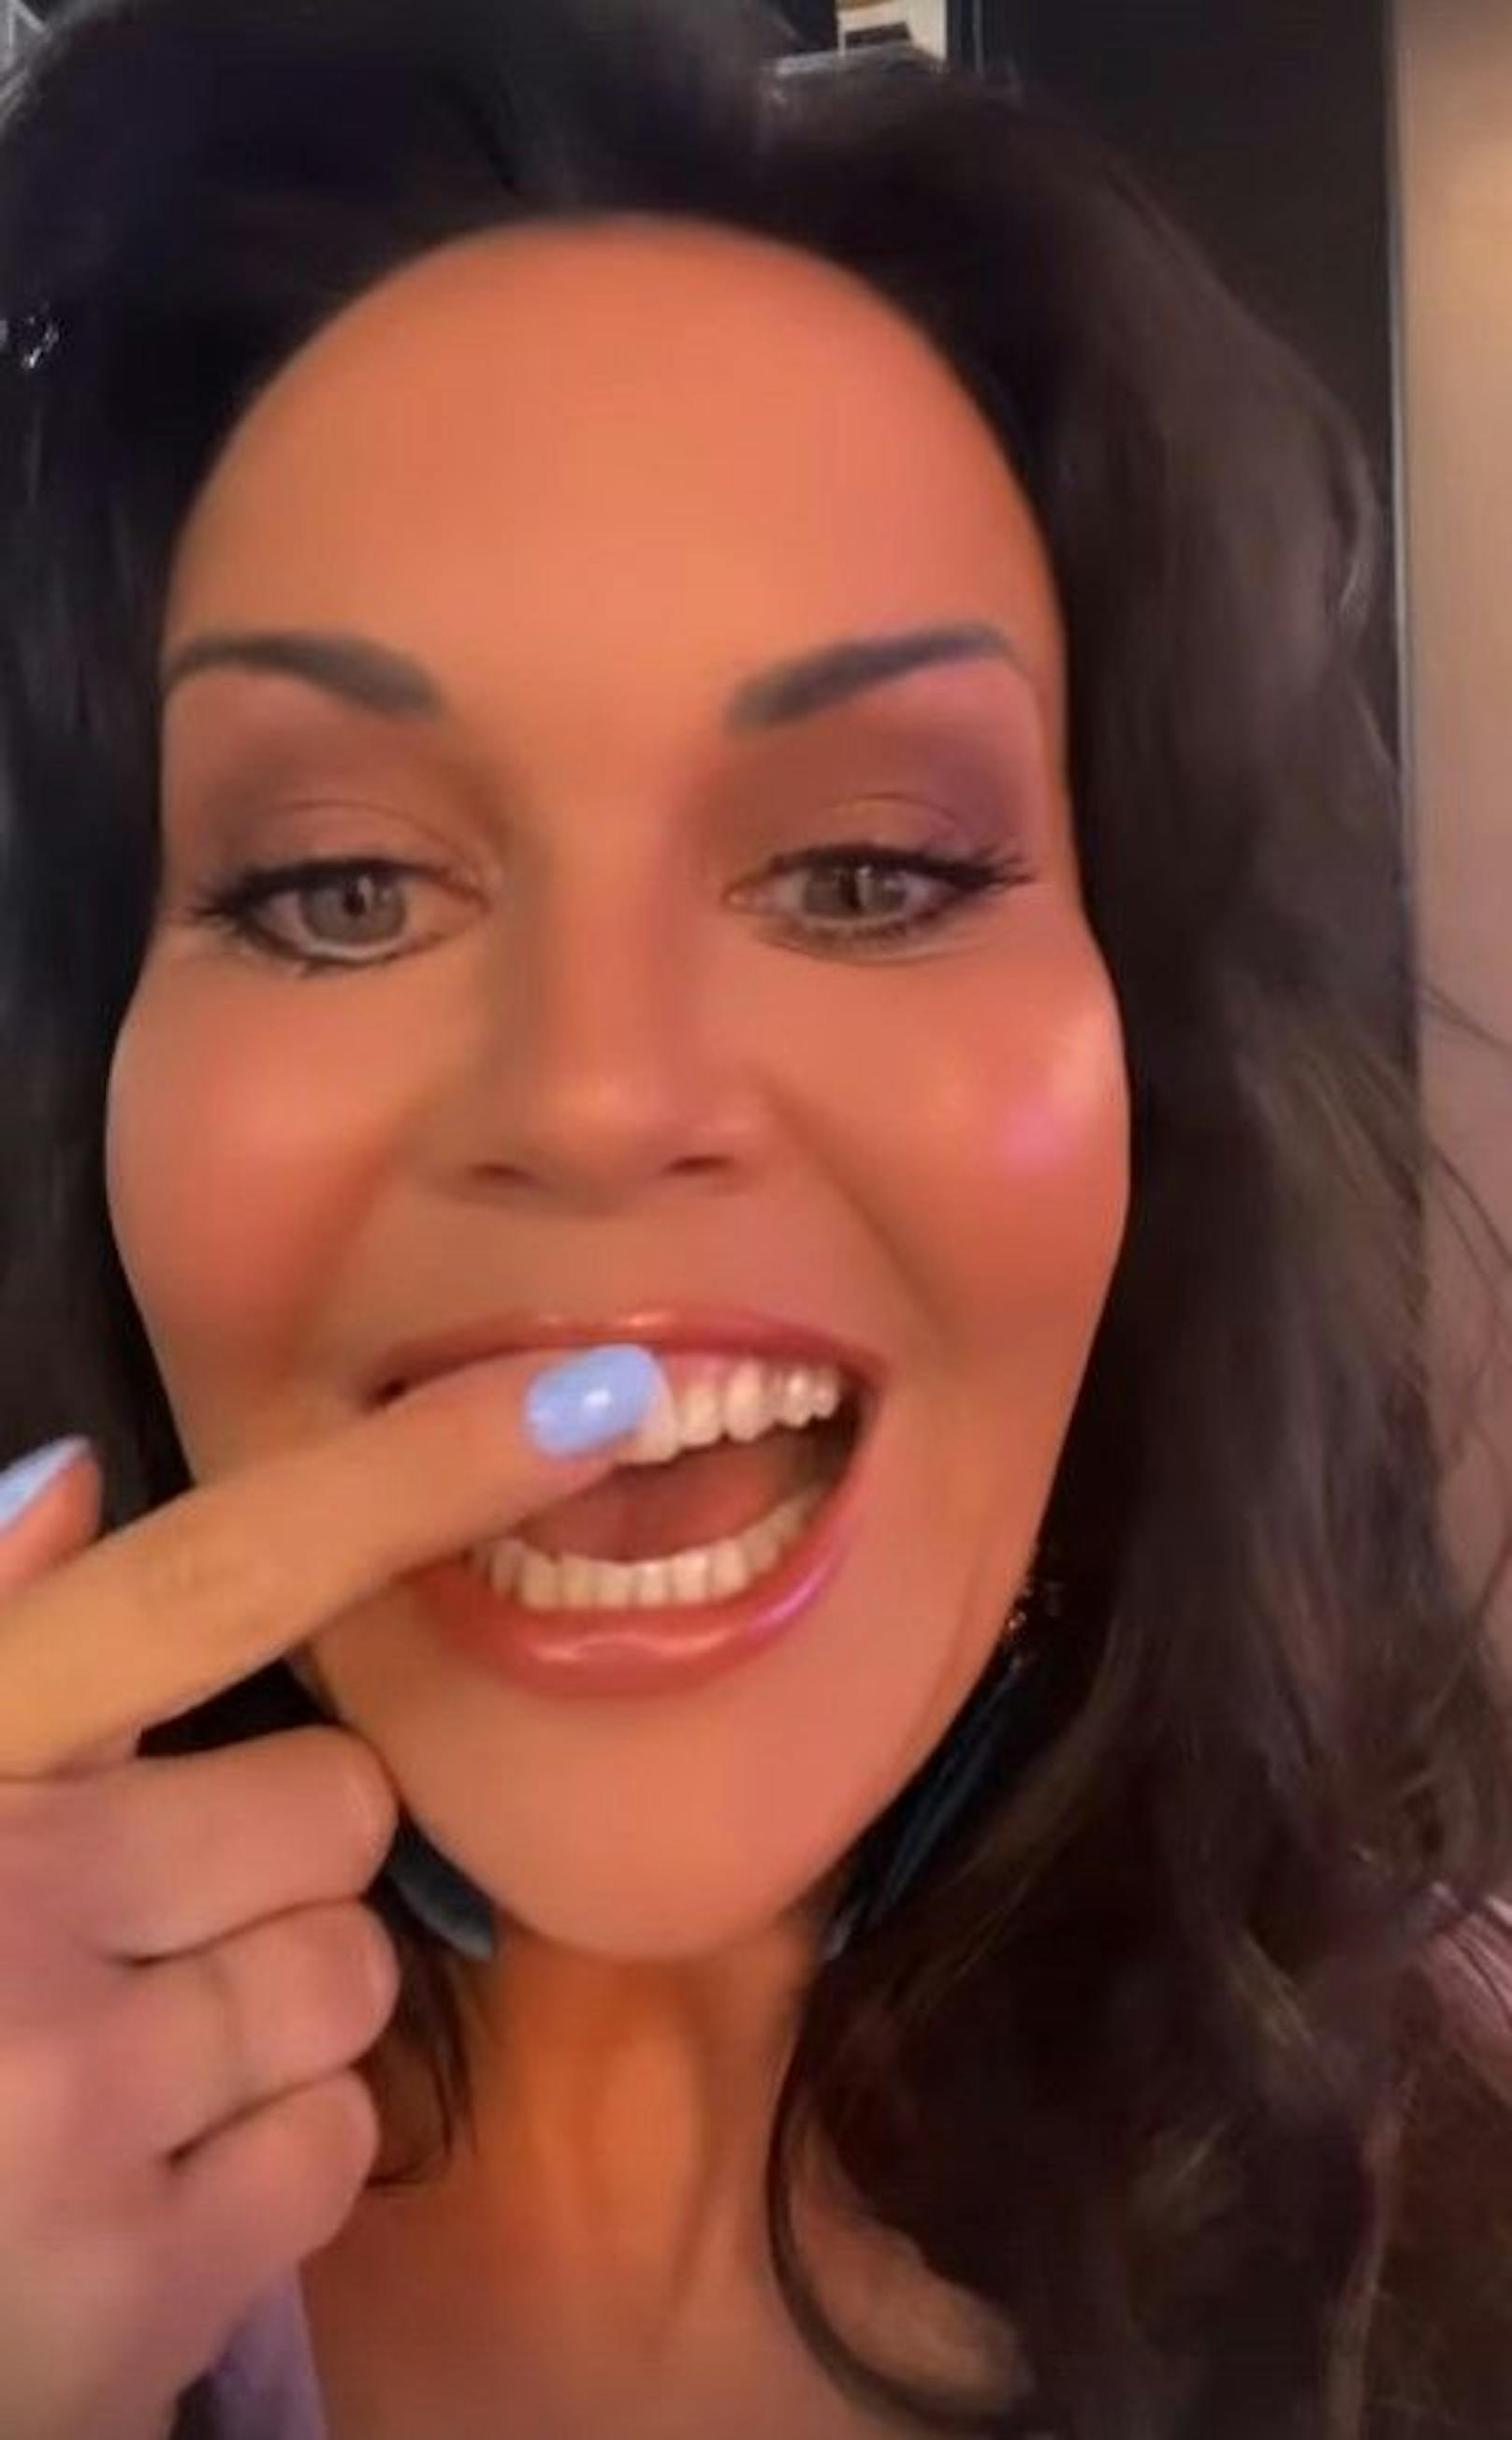 Noch mal Glück gehabt: Vor einer TV-Show entdeckt Martina Reuter Lippenstift auf ihren Zähnen.